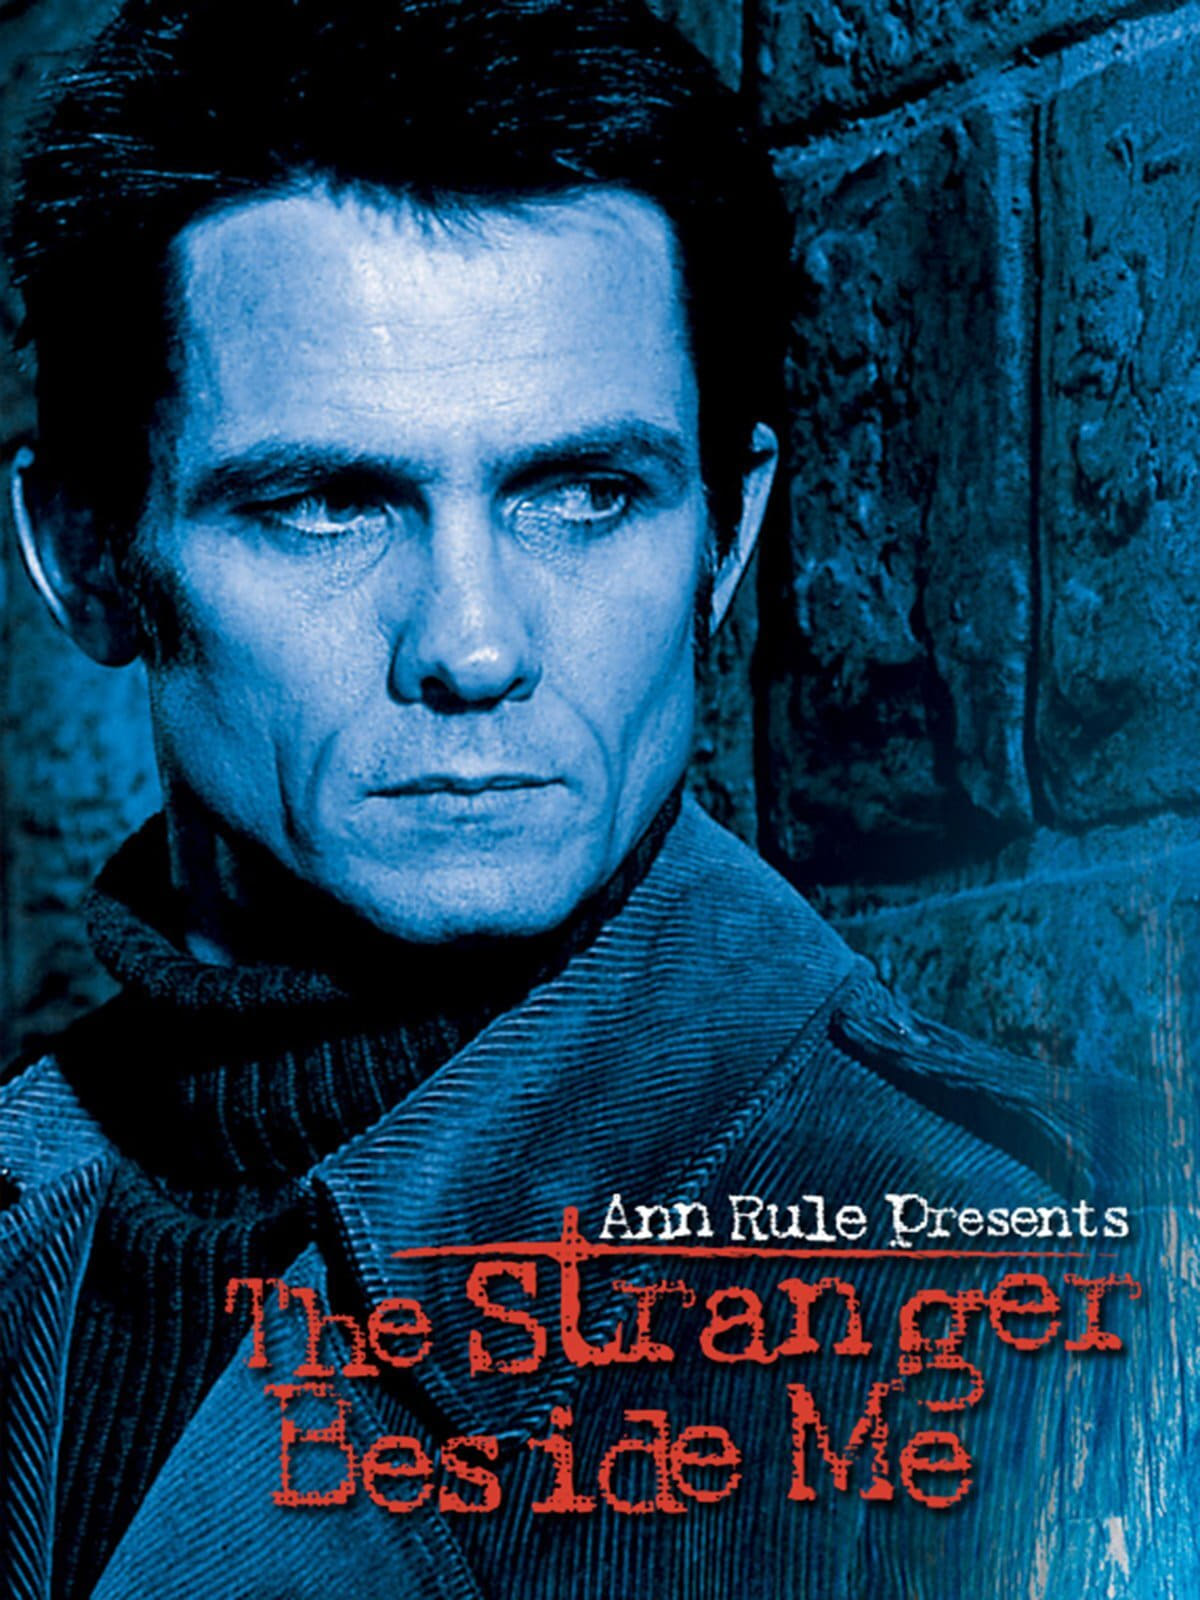 Ann Rule Presents: The Stranger Beside Me (2003)